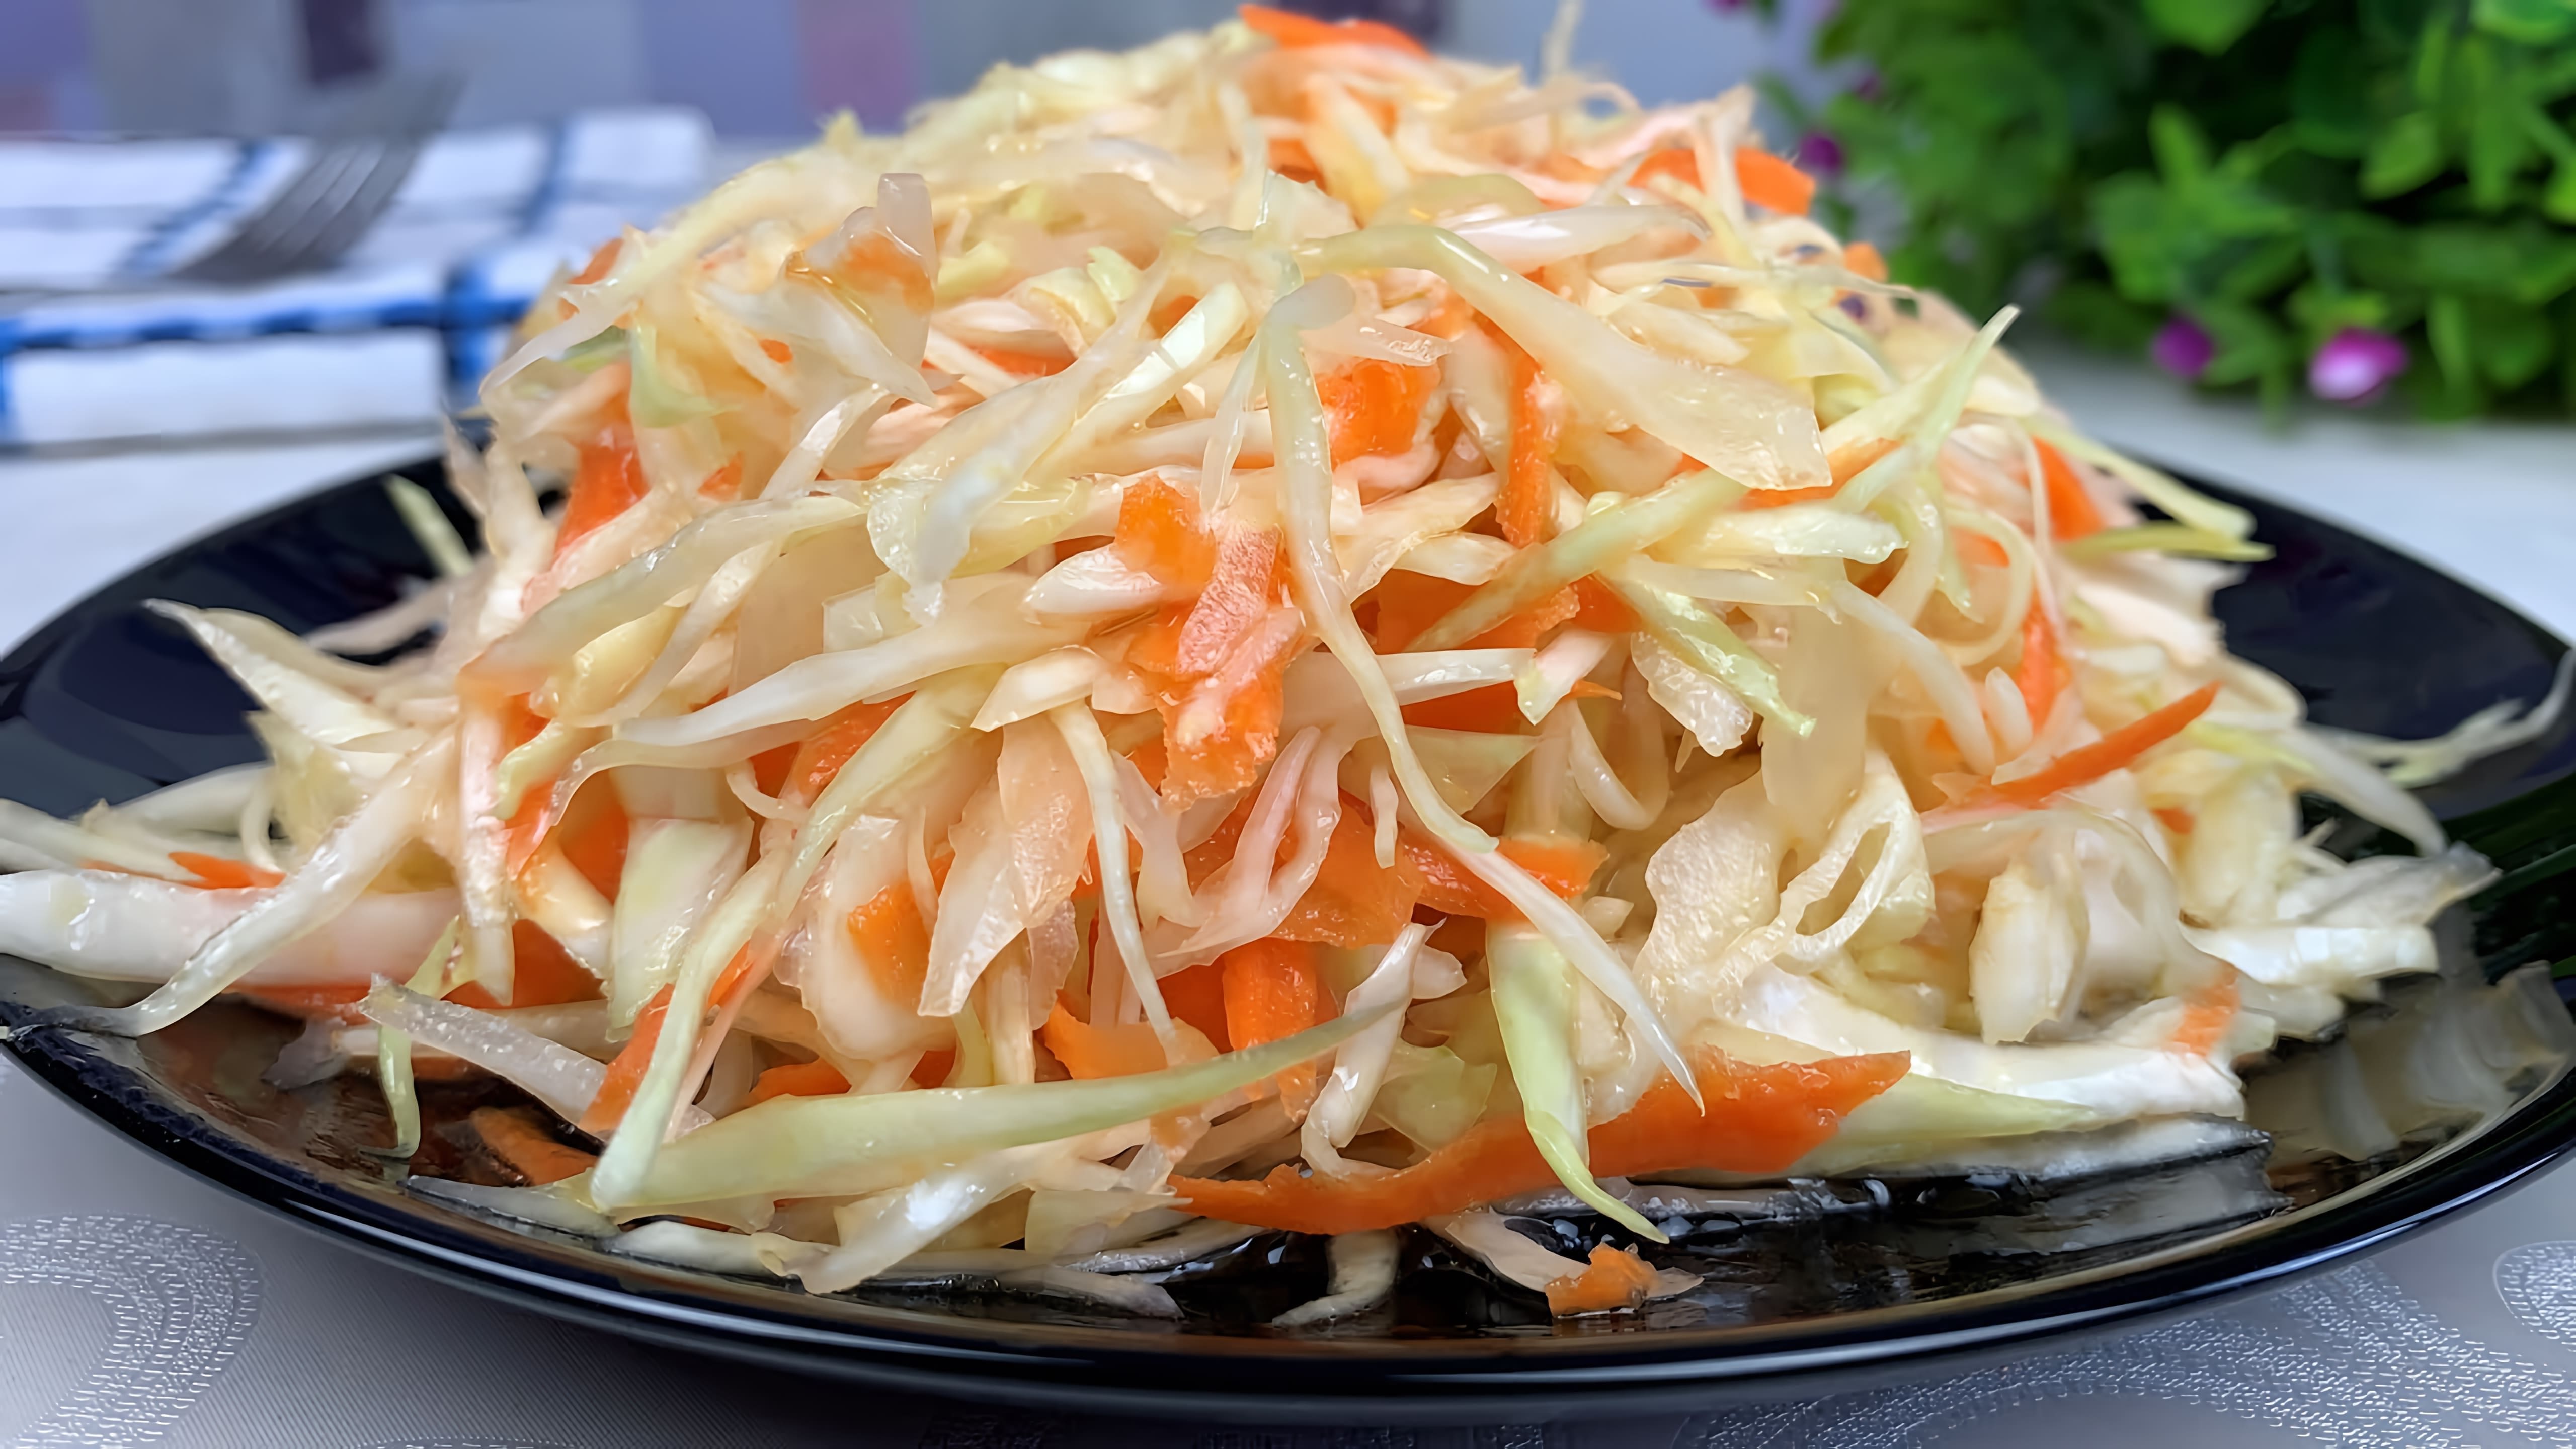 В этом видео демонстрируется рецепт приготовления салата из капусты и моркови, который подавали в советских столовых